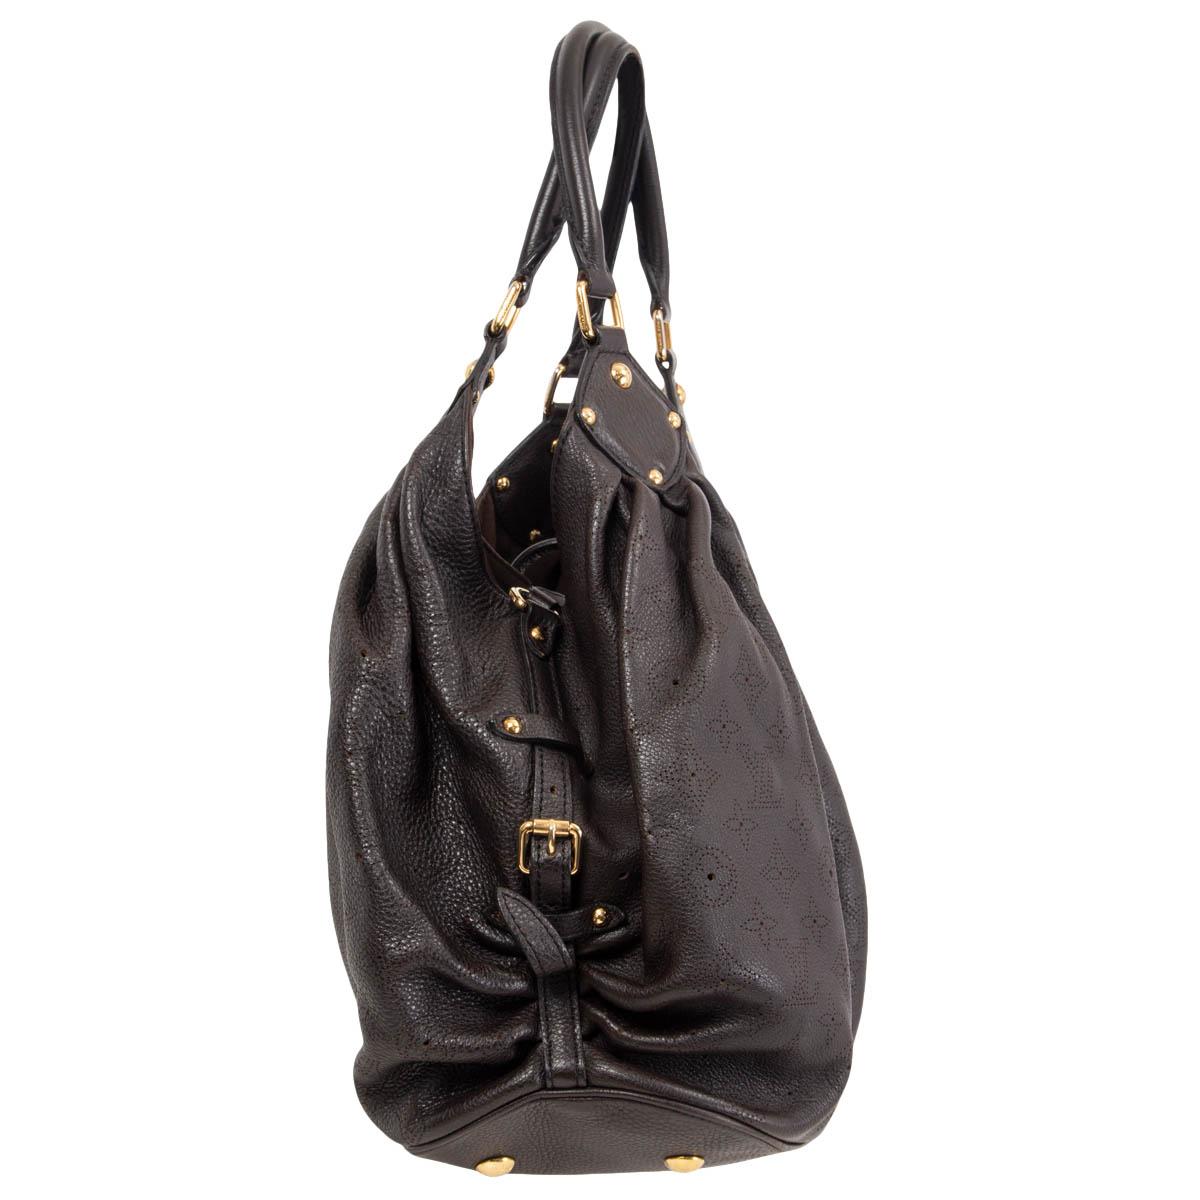 100% authentique Louis Vuitton Monogram Mahina Leather Large Shoulder Bag en cuir grainé Monogram perforé brun espresso. S'ouvre avec un fermoir en métal doré et une lanière avec crochet. Doublé d'alacantara marron, avec une poche zippée au dos et